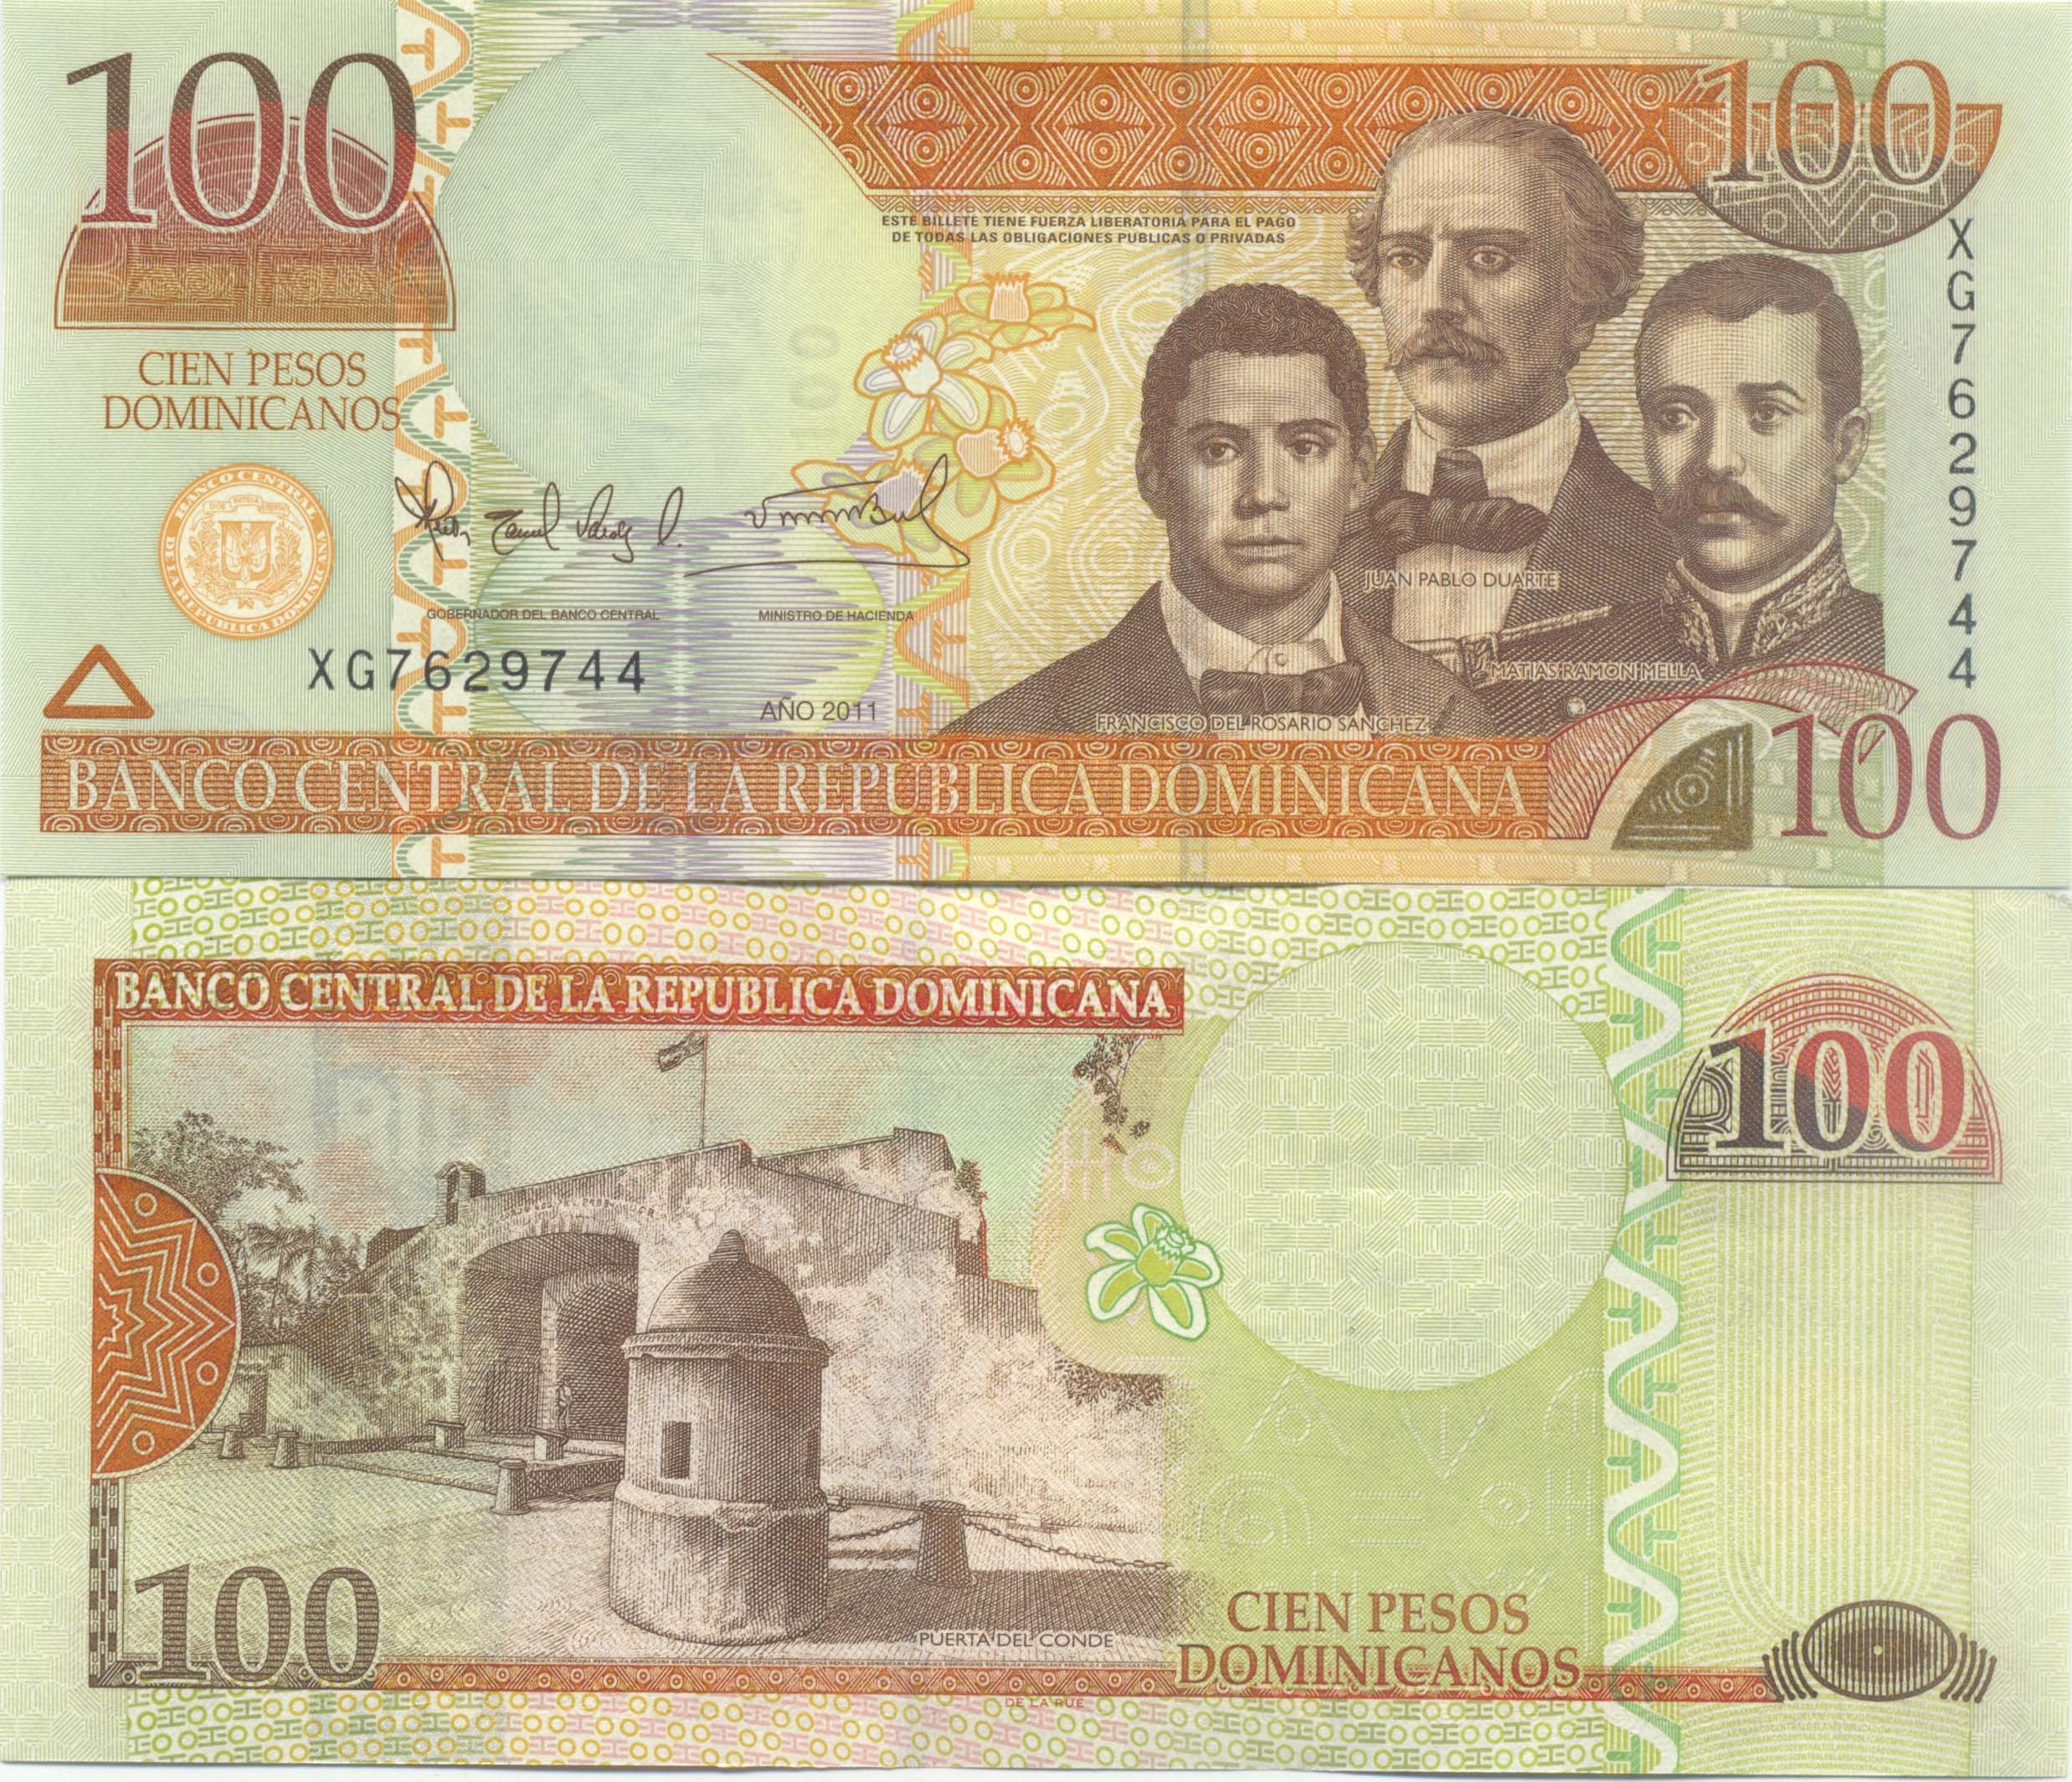 DOMINICAN  REPUBLIC 100  PESOS  2013  P 184 Prefix DN  Uncirculated Banknotes 